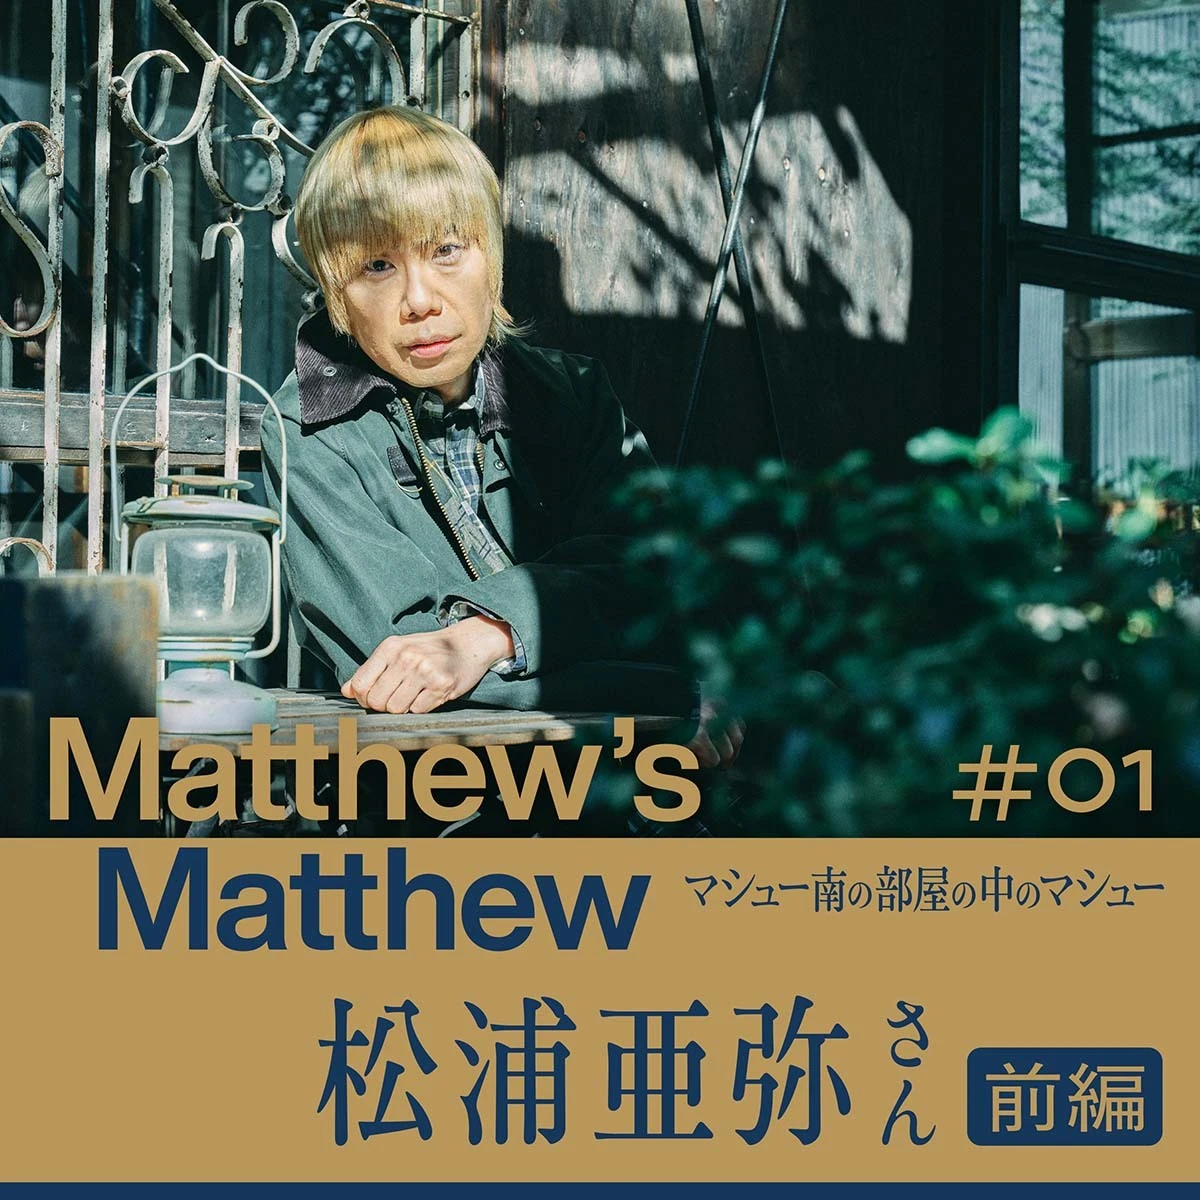 「Matthew’s Matthew マシュー南の部屋の中のマシュー」